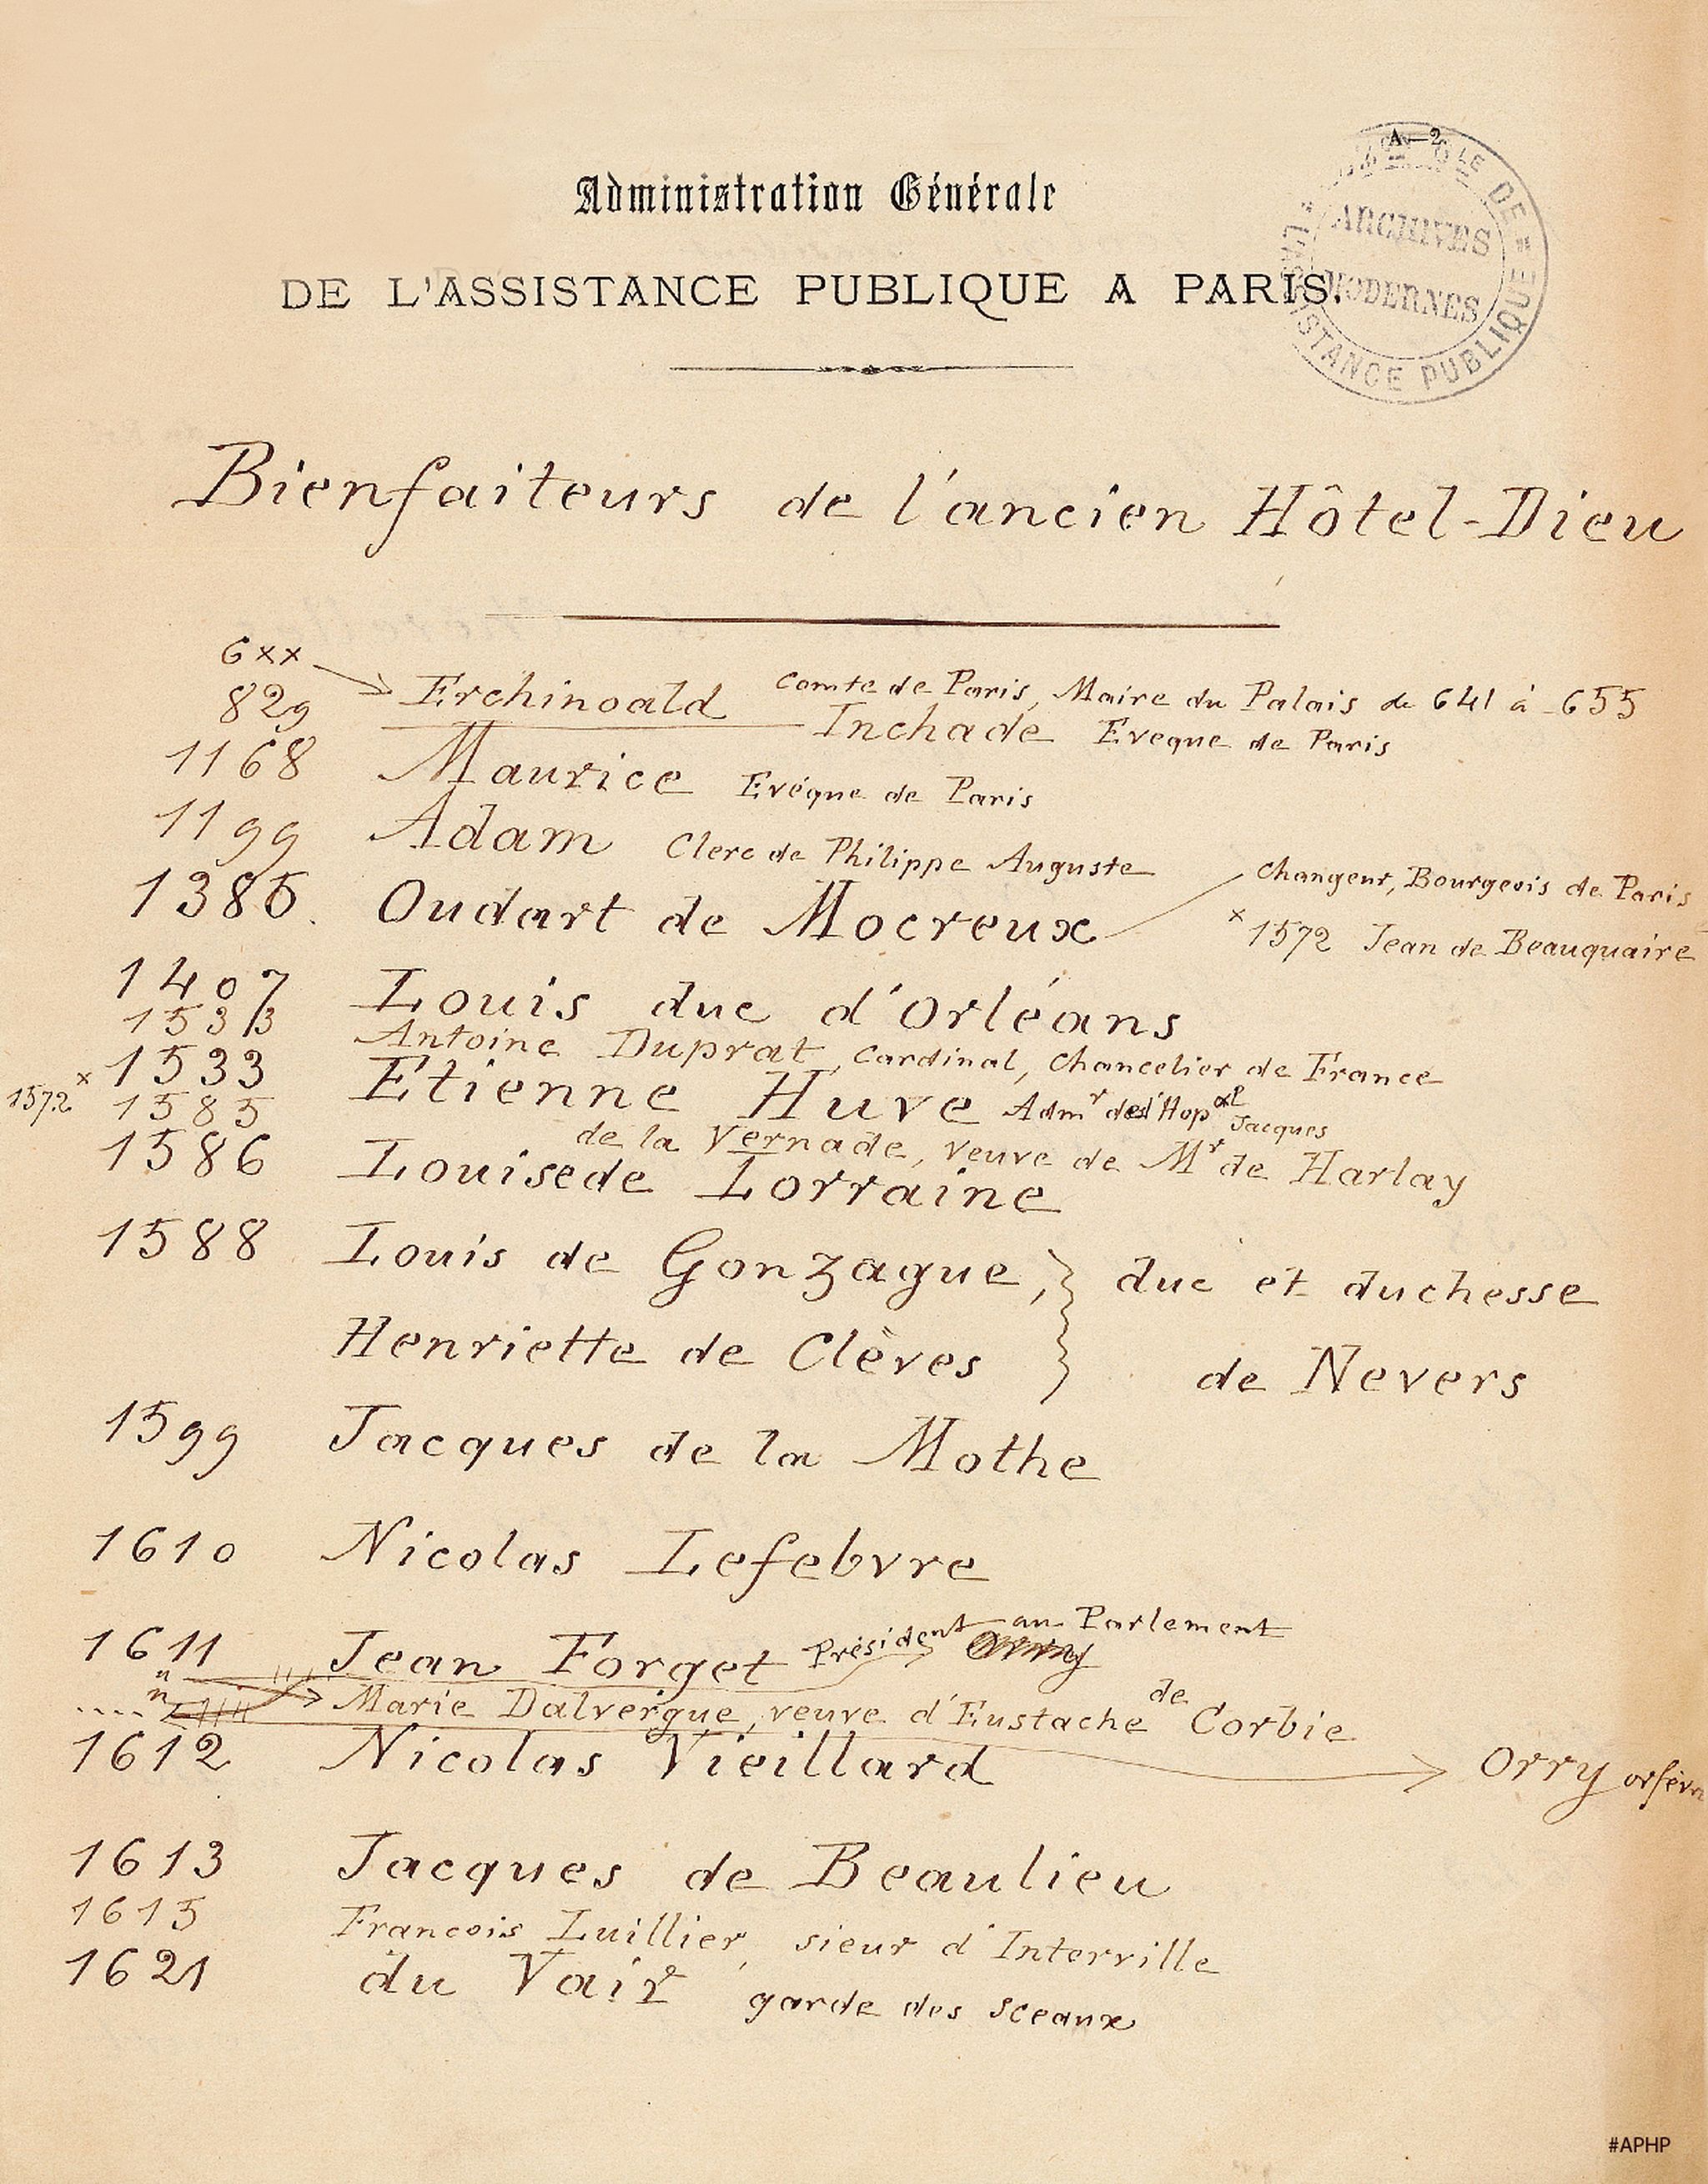 Liste des bienfaiteurs de l’ancien Hôtel-Dieu, 1877 (Archives AP-HP, 26FOSS/1).